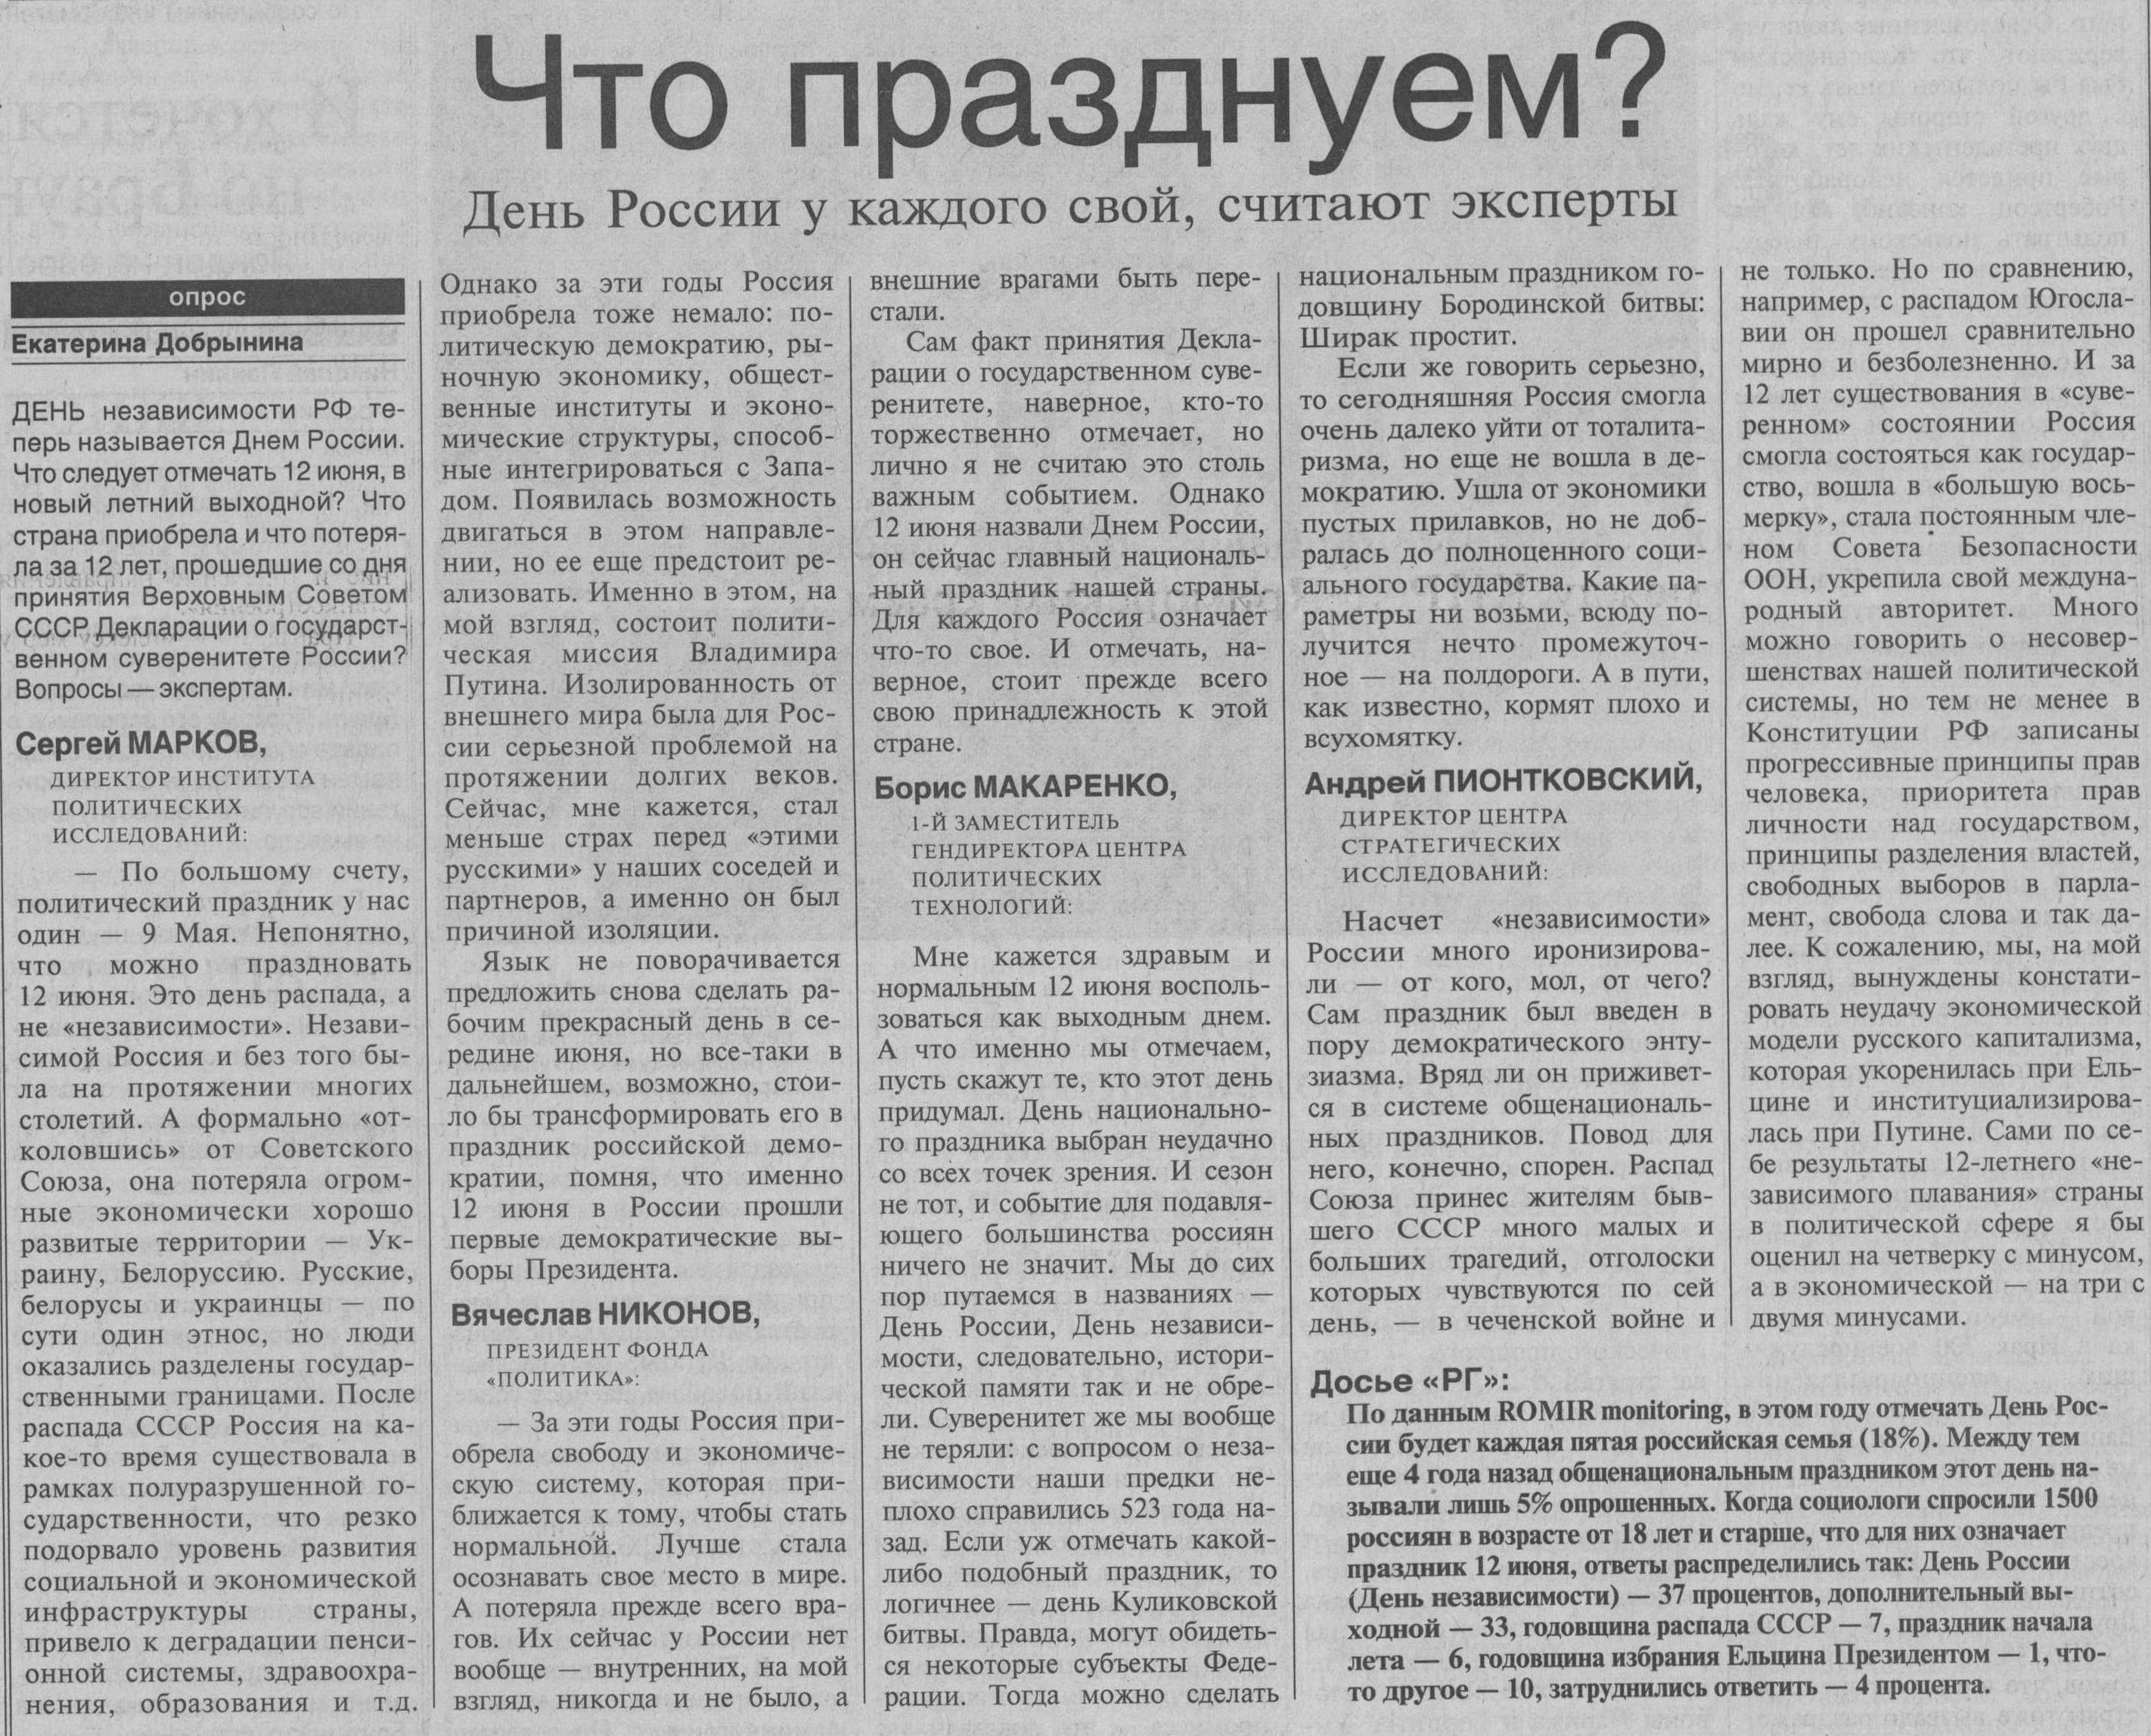 Когда 9 мая стал выходным. Российская газета. Российская газета выходные данные. Российская газета 2009 год. Какой суверенитет в России сейчас.